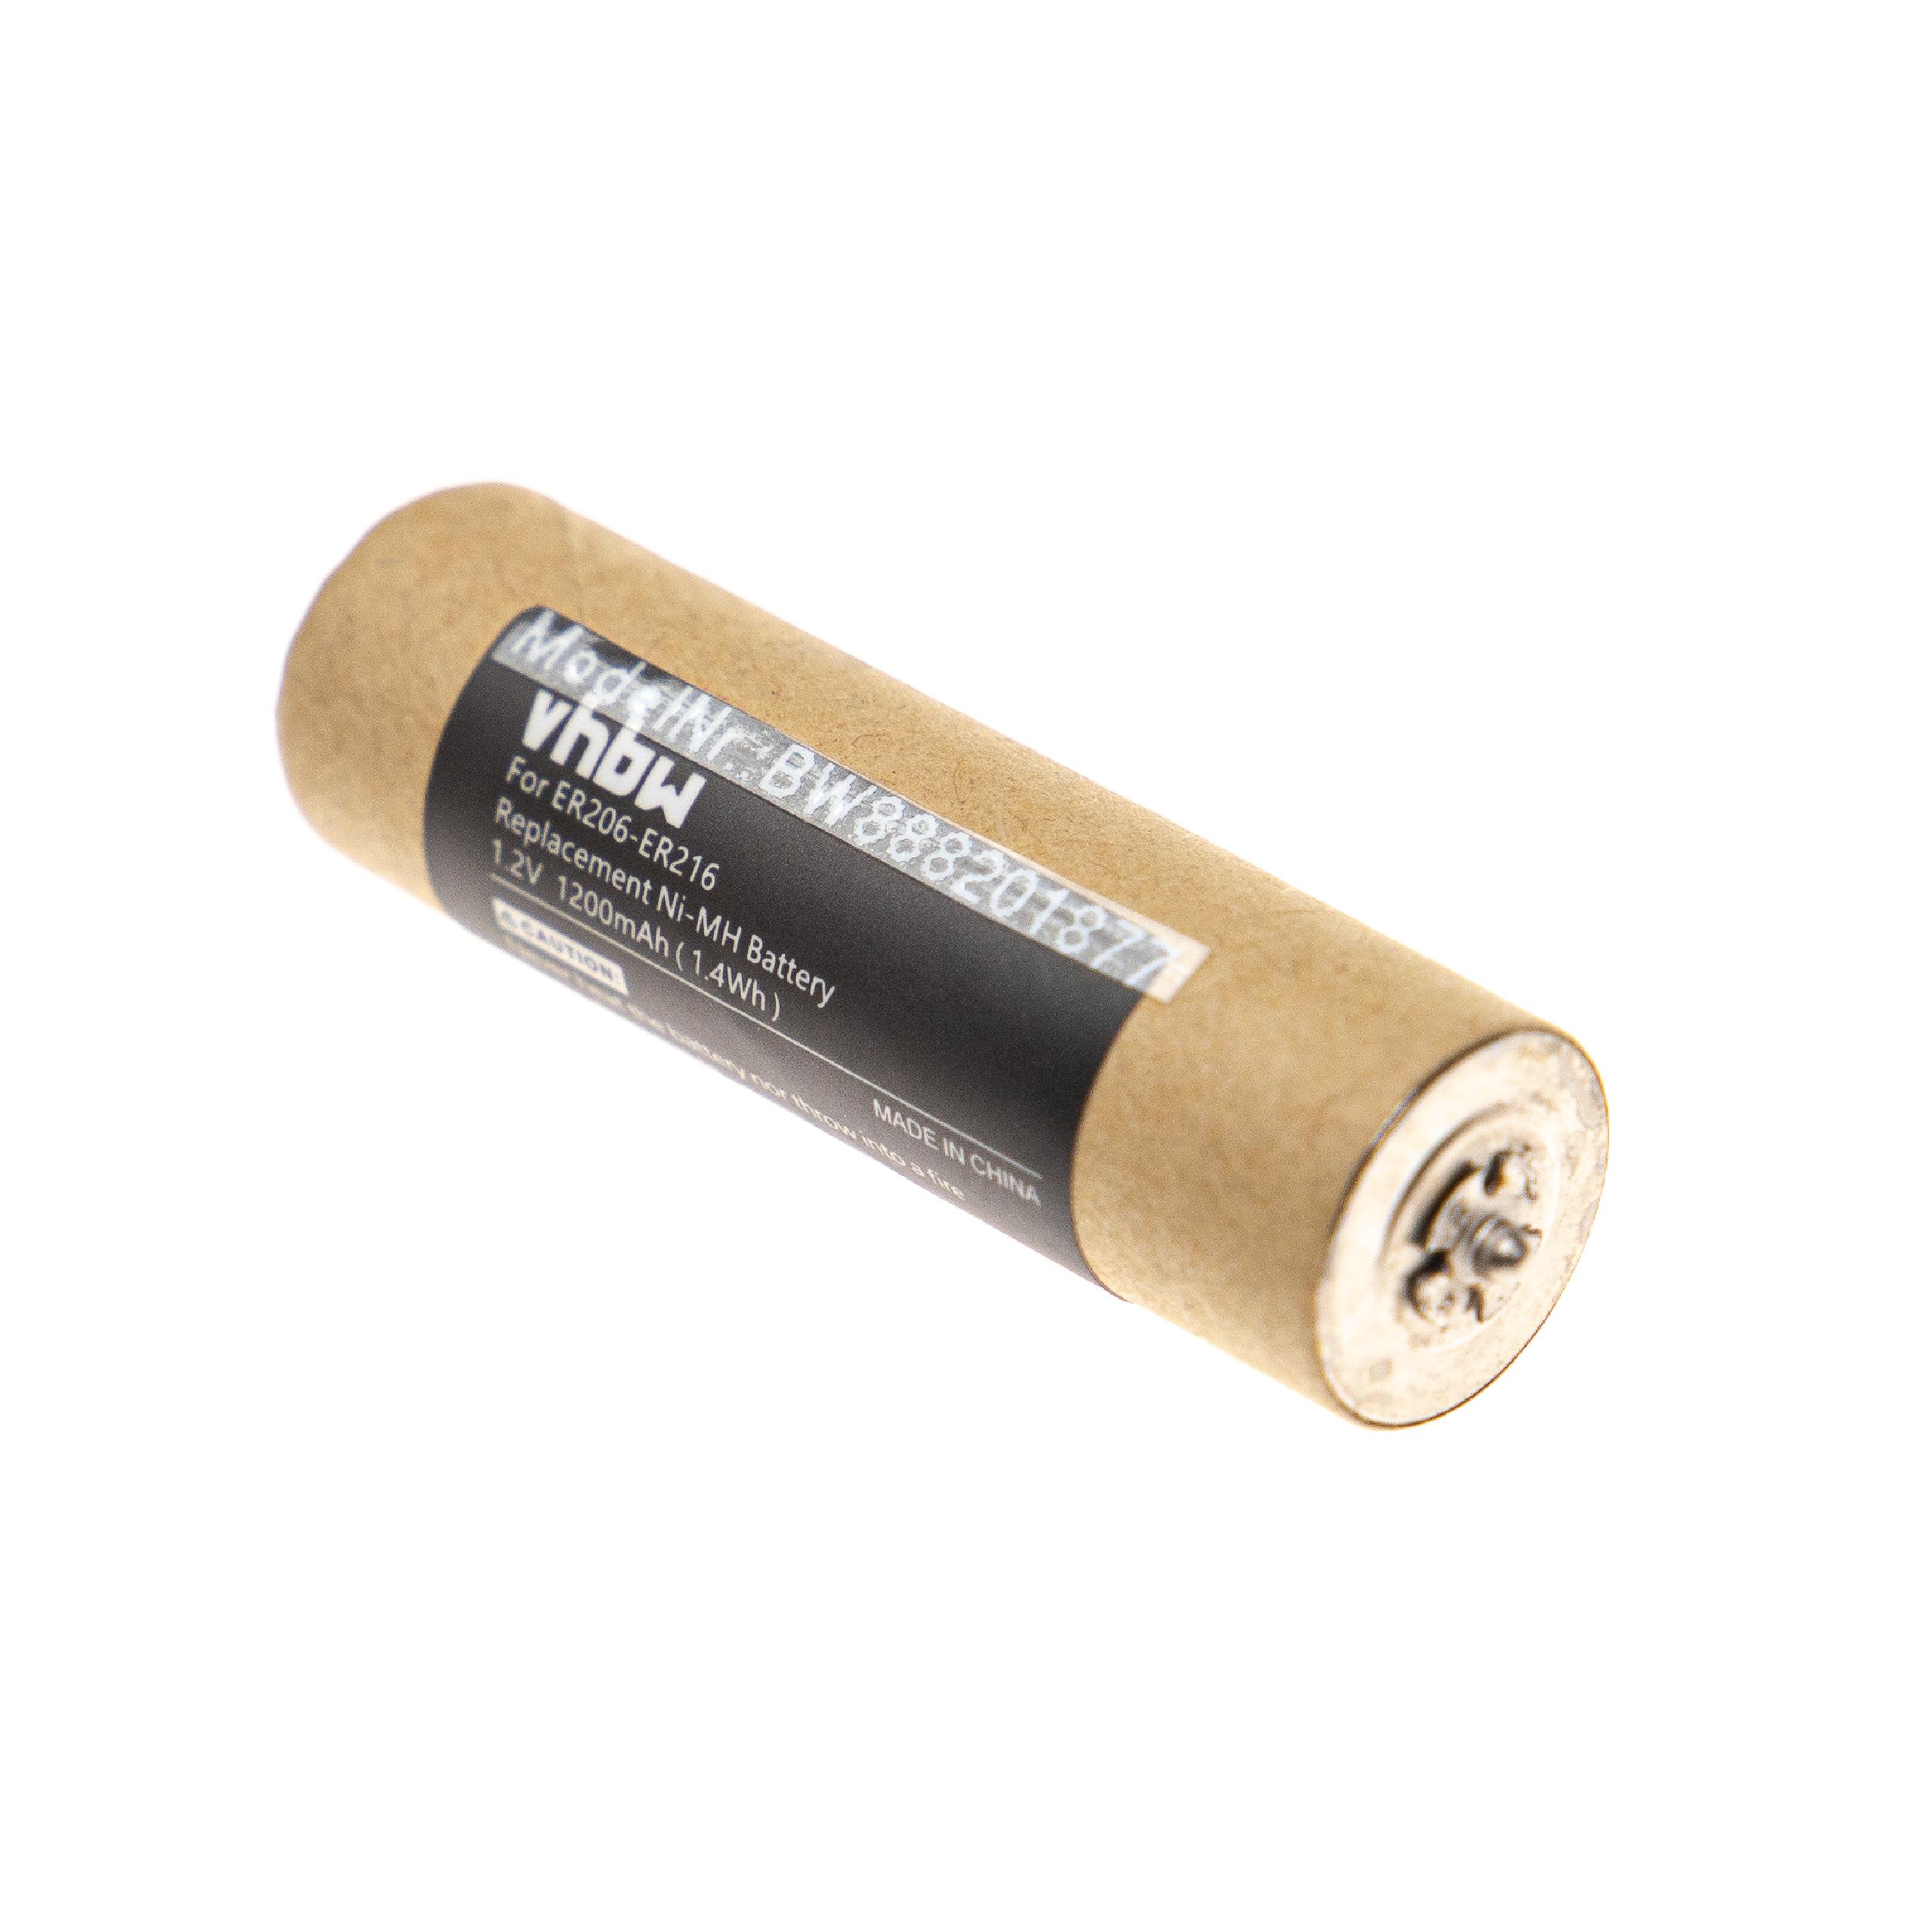 Batterie remplace Panasonic WER213L2504, WER2061L2508 pour rasoir électrique - 1200mAh 1,2V NiMH